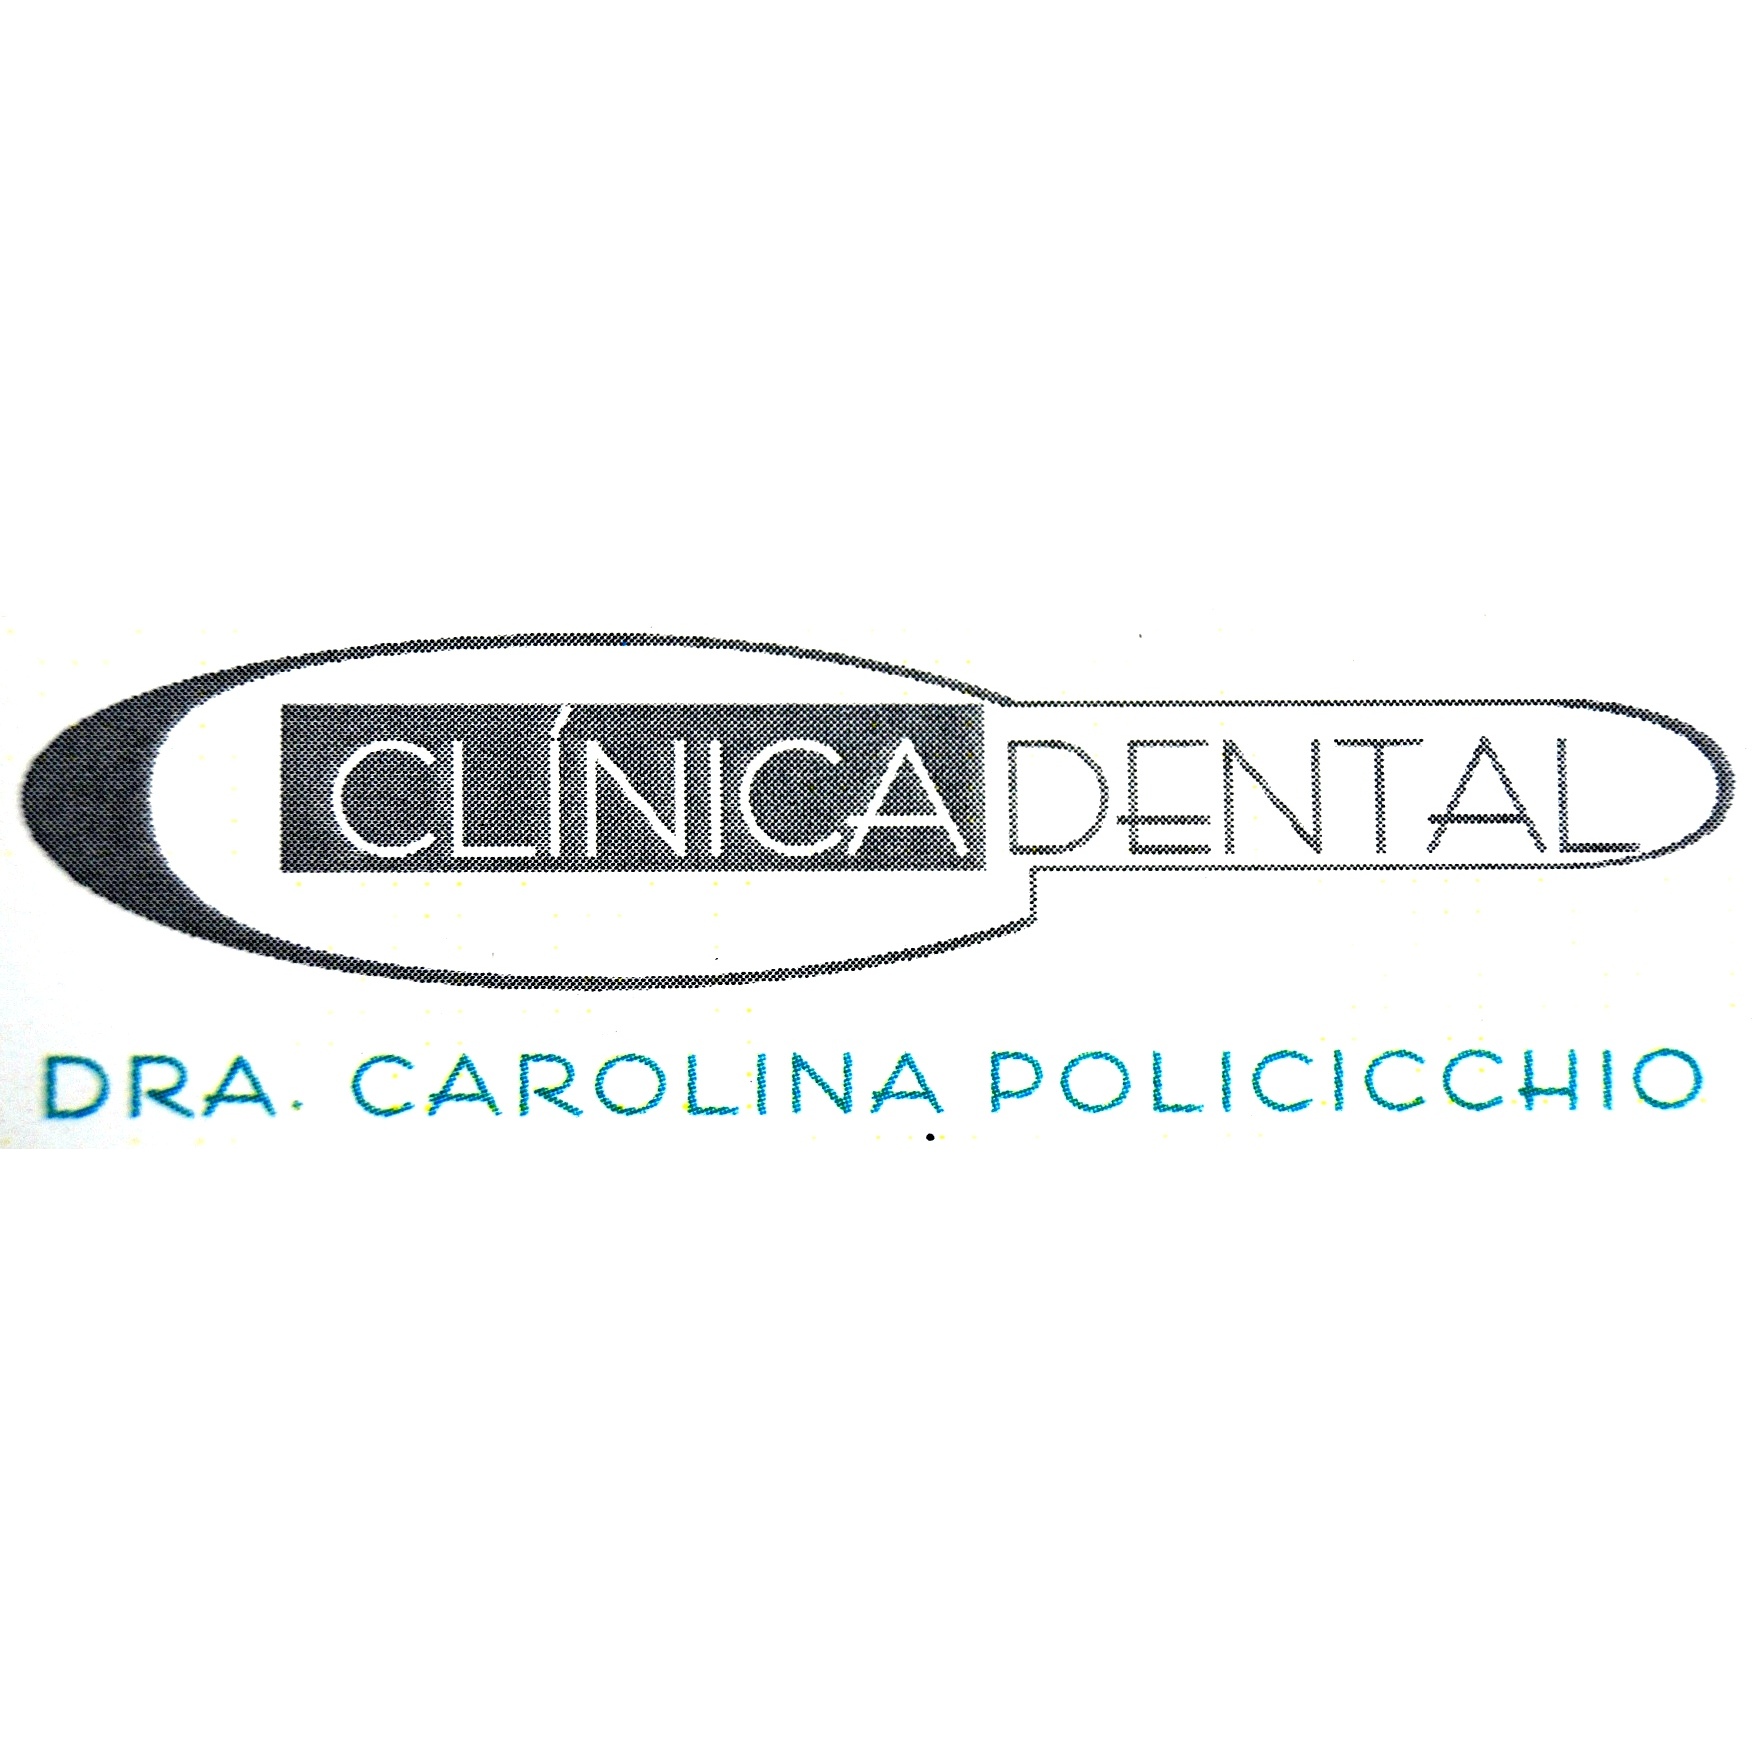 Dra. Carolina Policicchio Logo